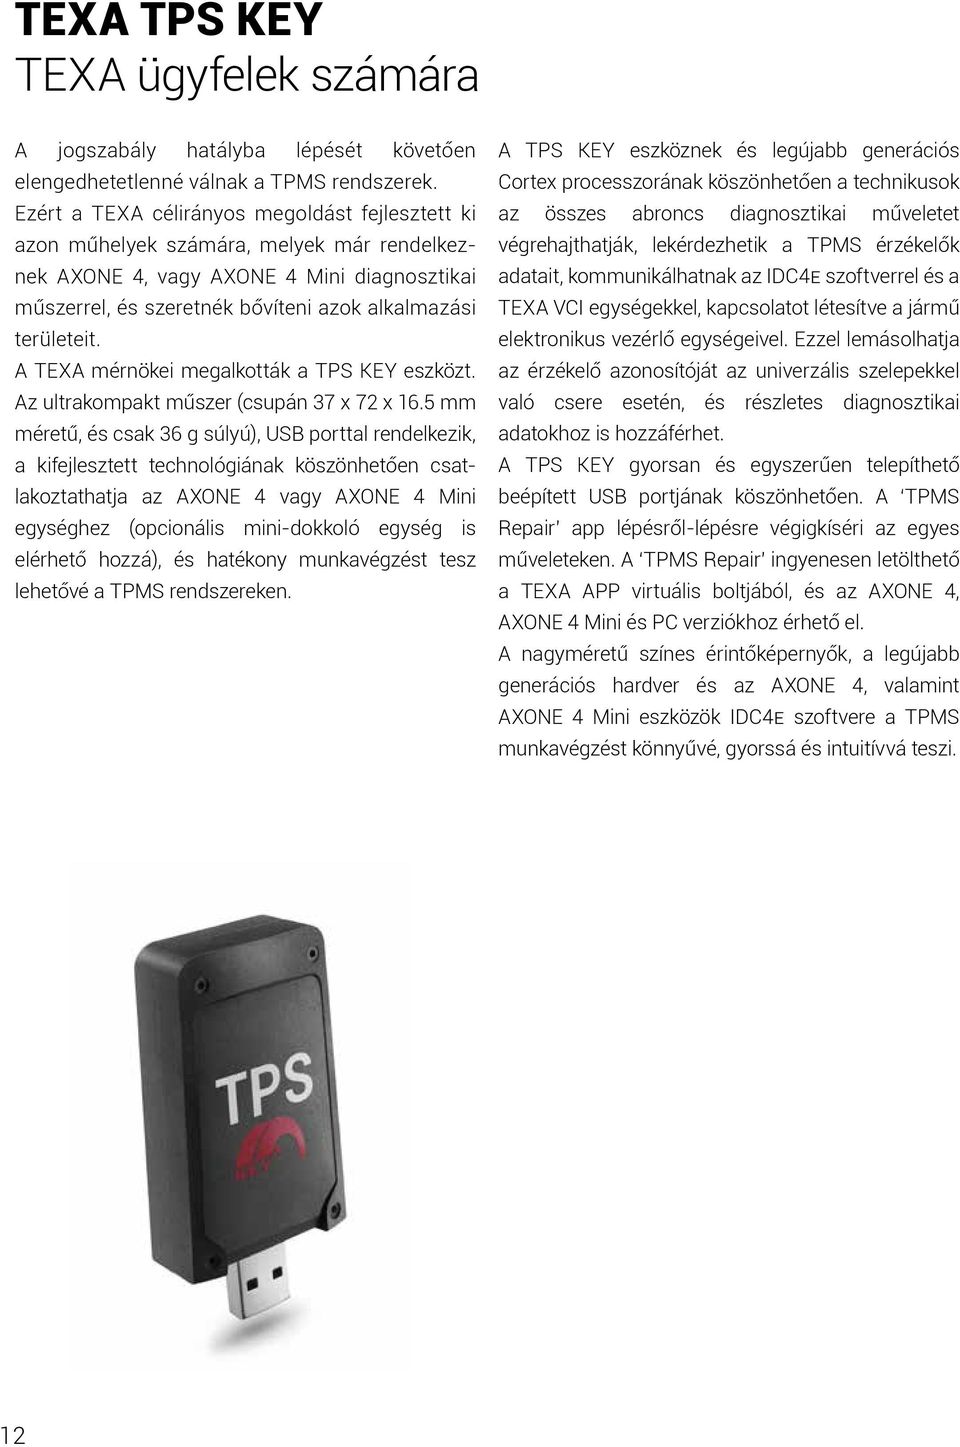 A TEXA mérnökei megalkották a TPS KEY eszközt. Az ultrakompakt műszer (csupán 37 x 72 x 16.